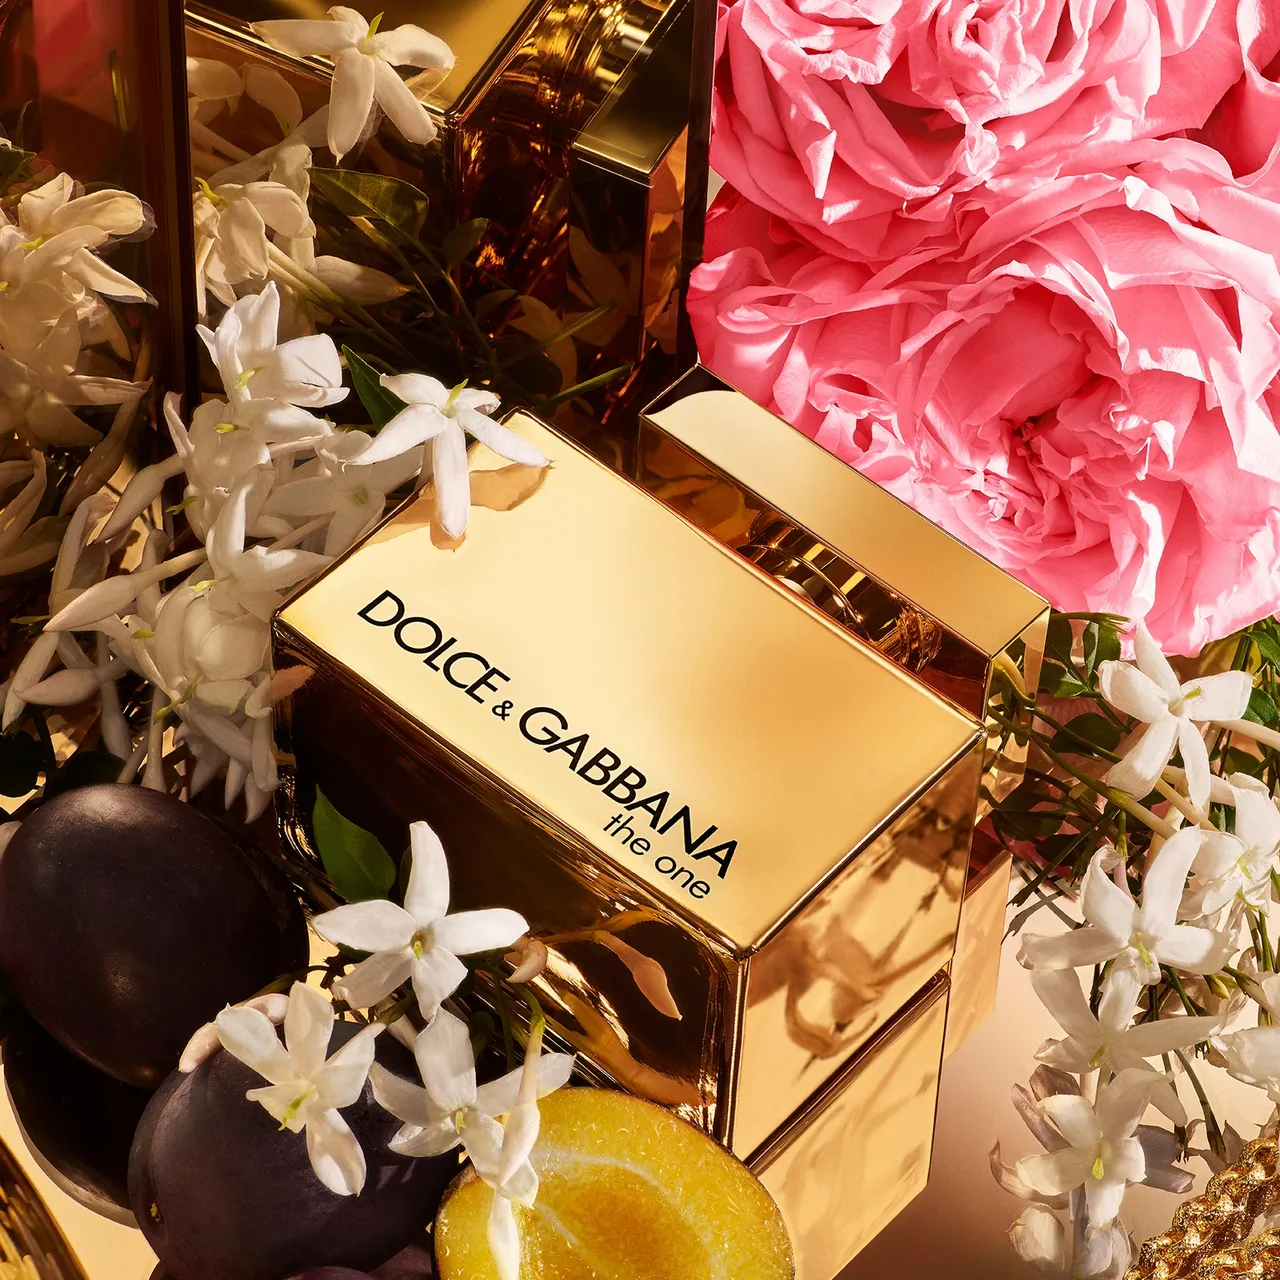 Dolce&Gabbana The One Gold Eau de Parfum Intense Pour Femme 50ml